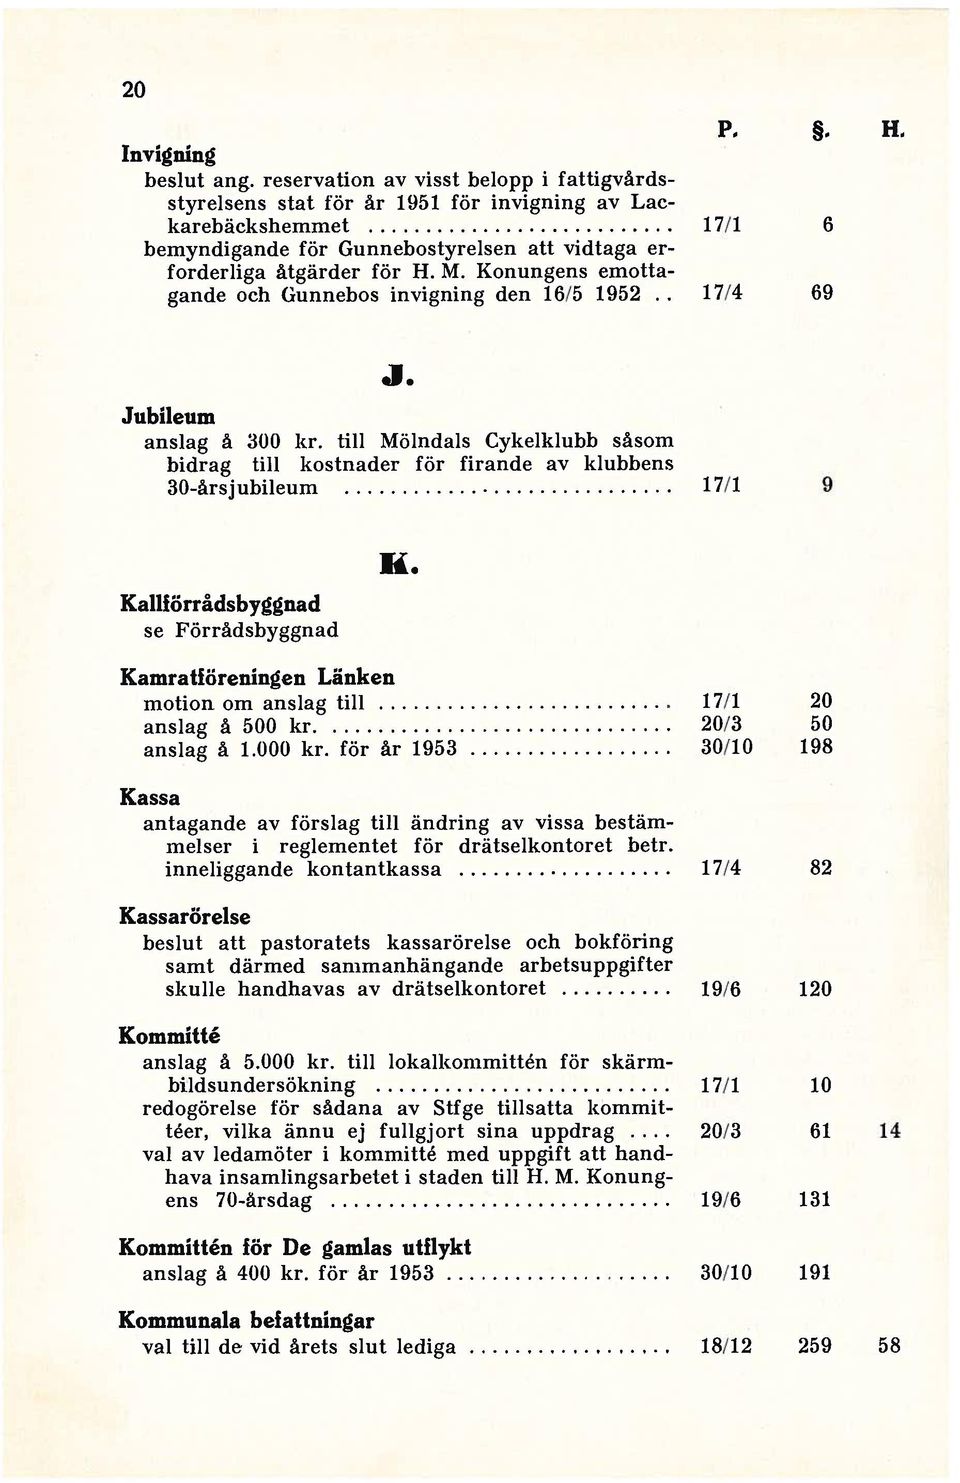 Konungens emotta gande och Gunnebos invigning den 16/5 1952.. 17/4 69 J. Jubileum anslag å 300 kr.